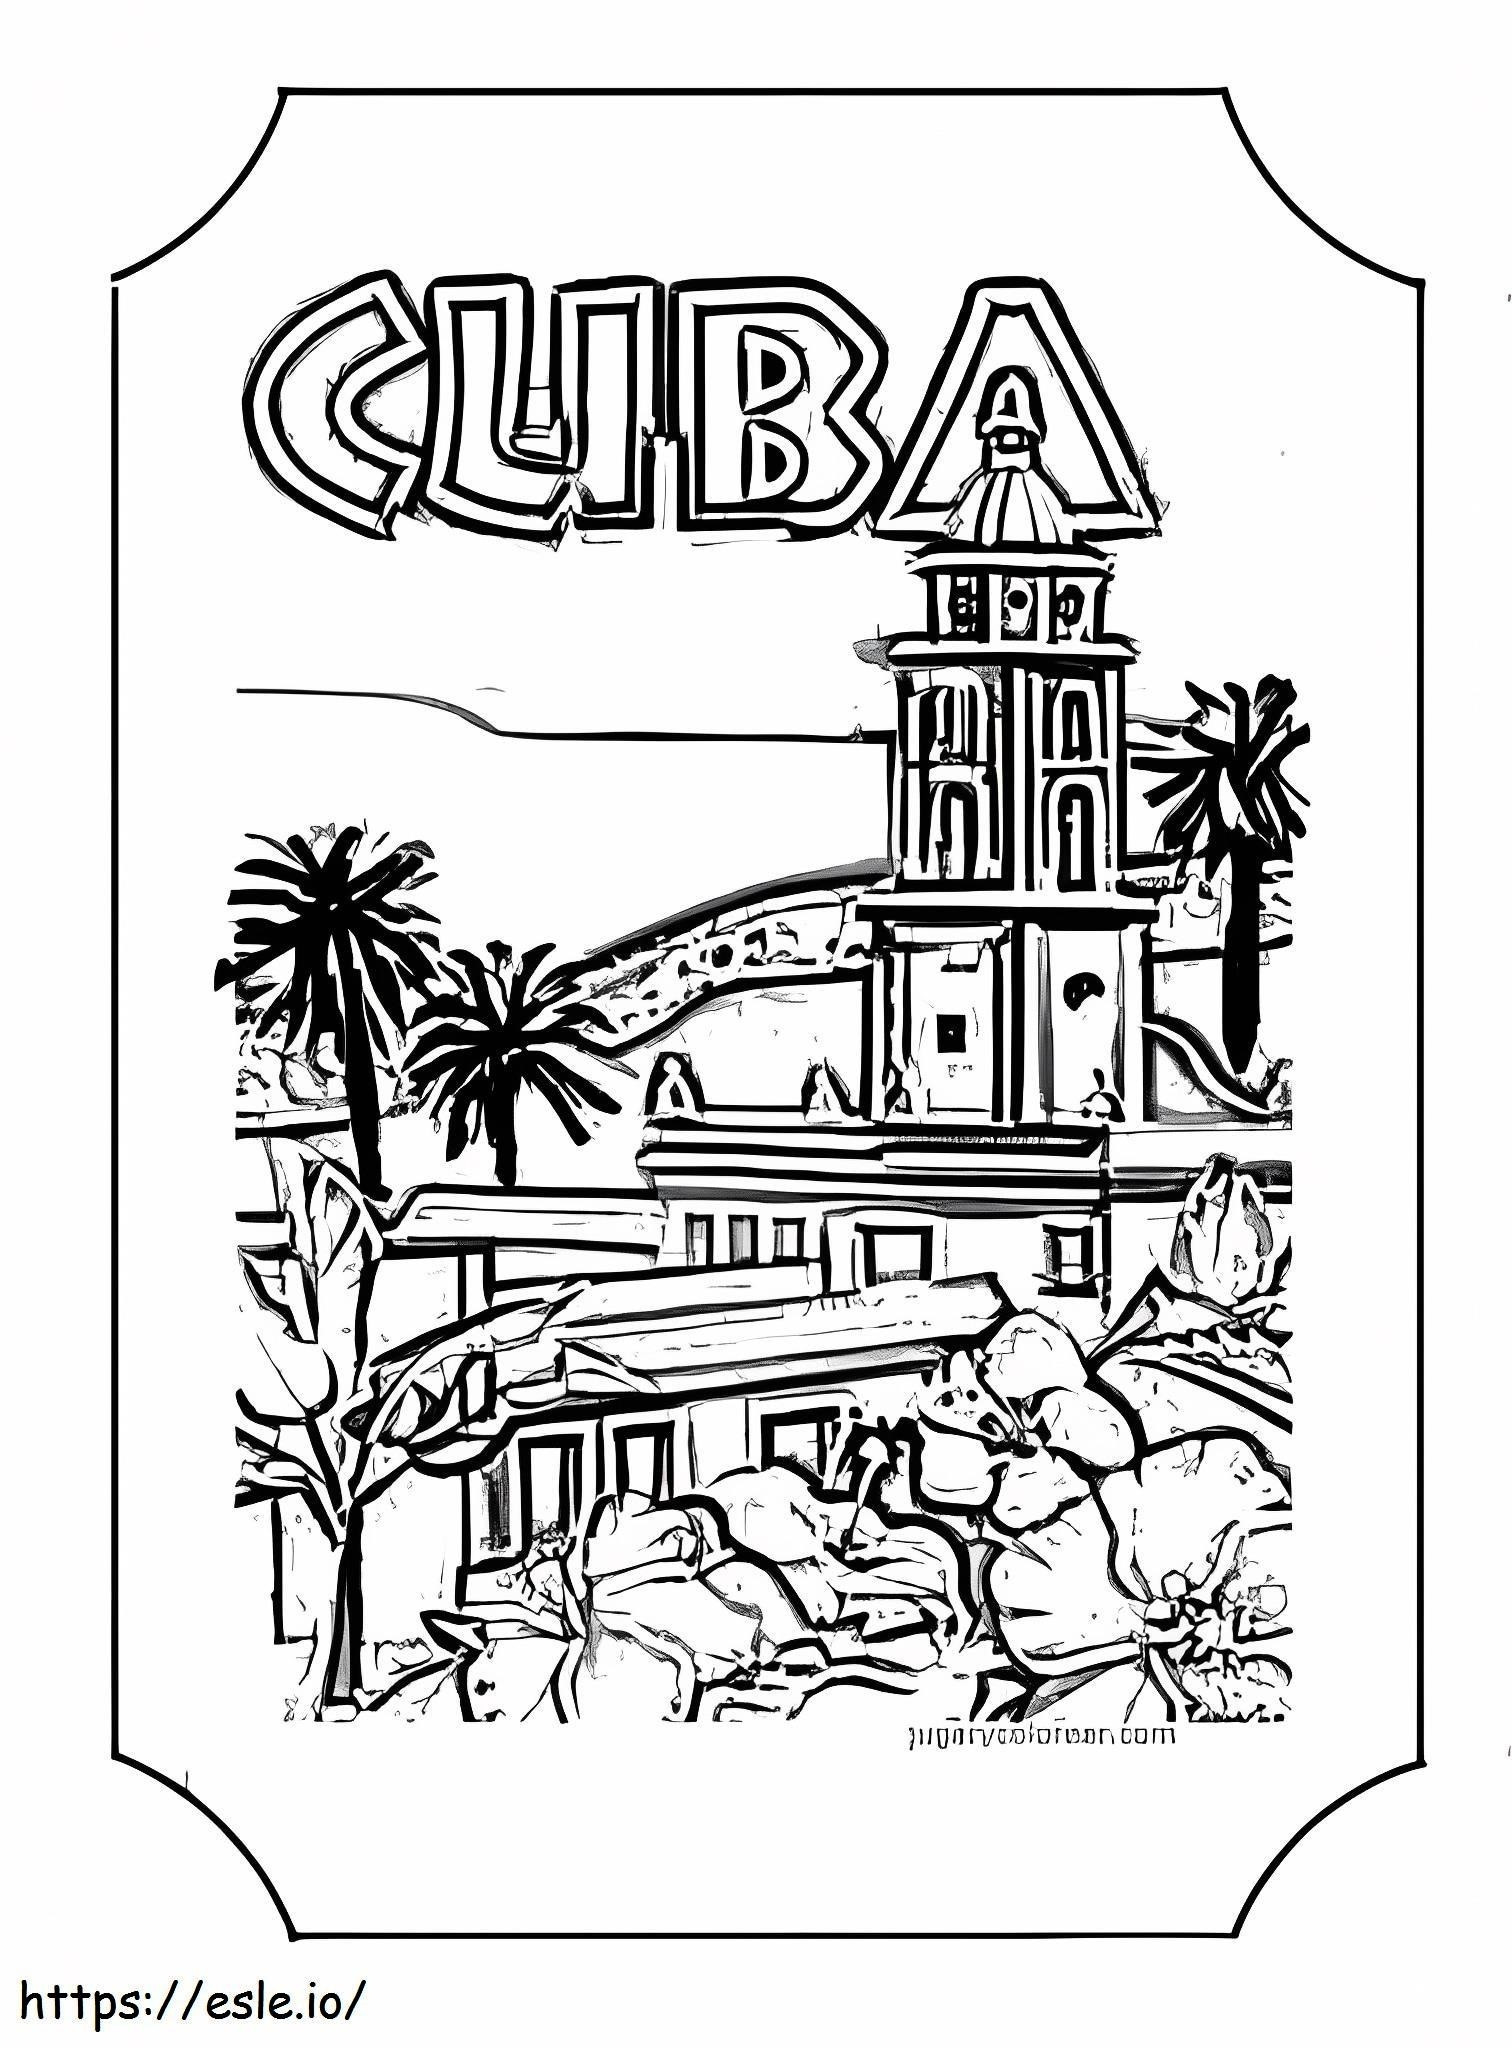 Cuba-land kleurplaat kleurplaat